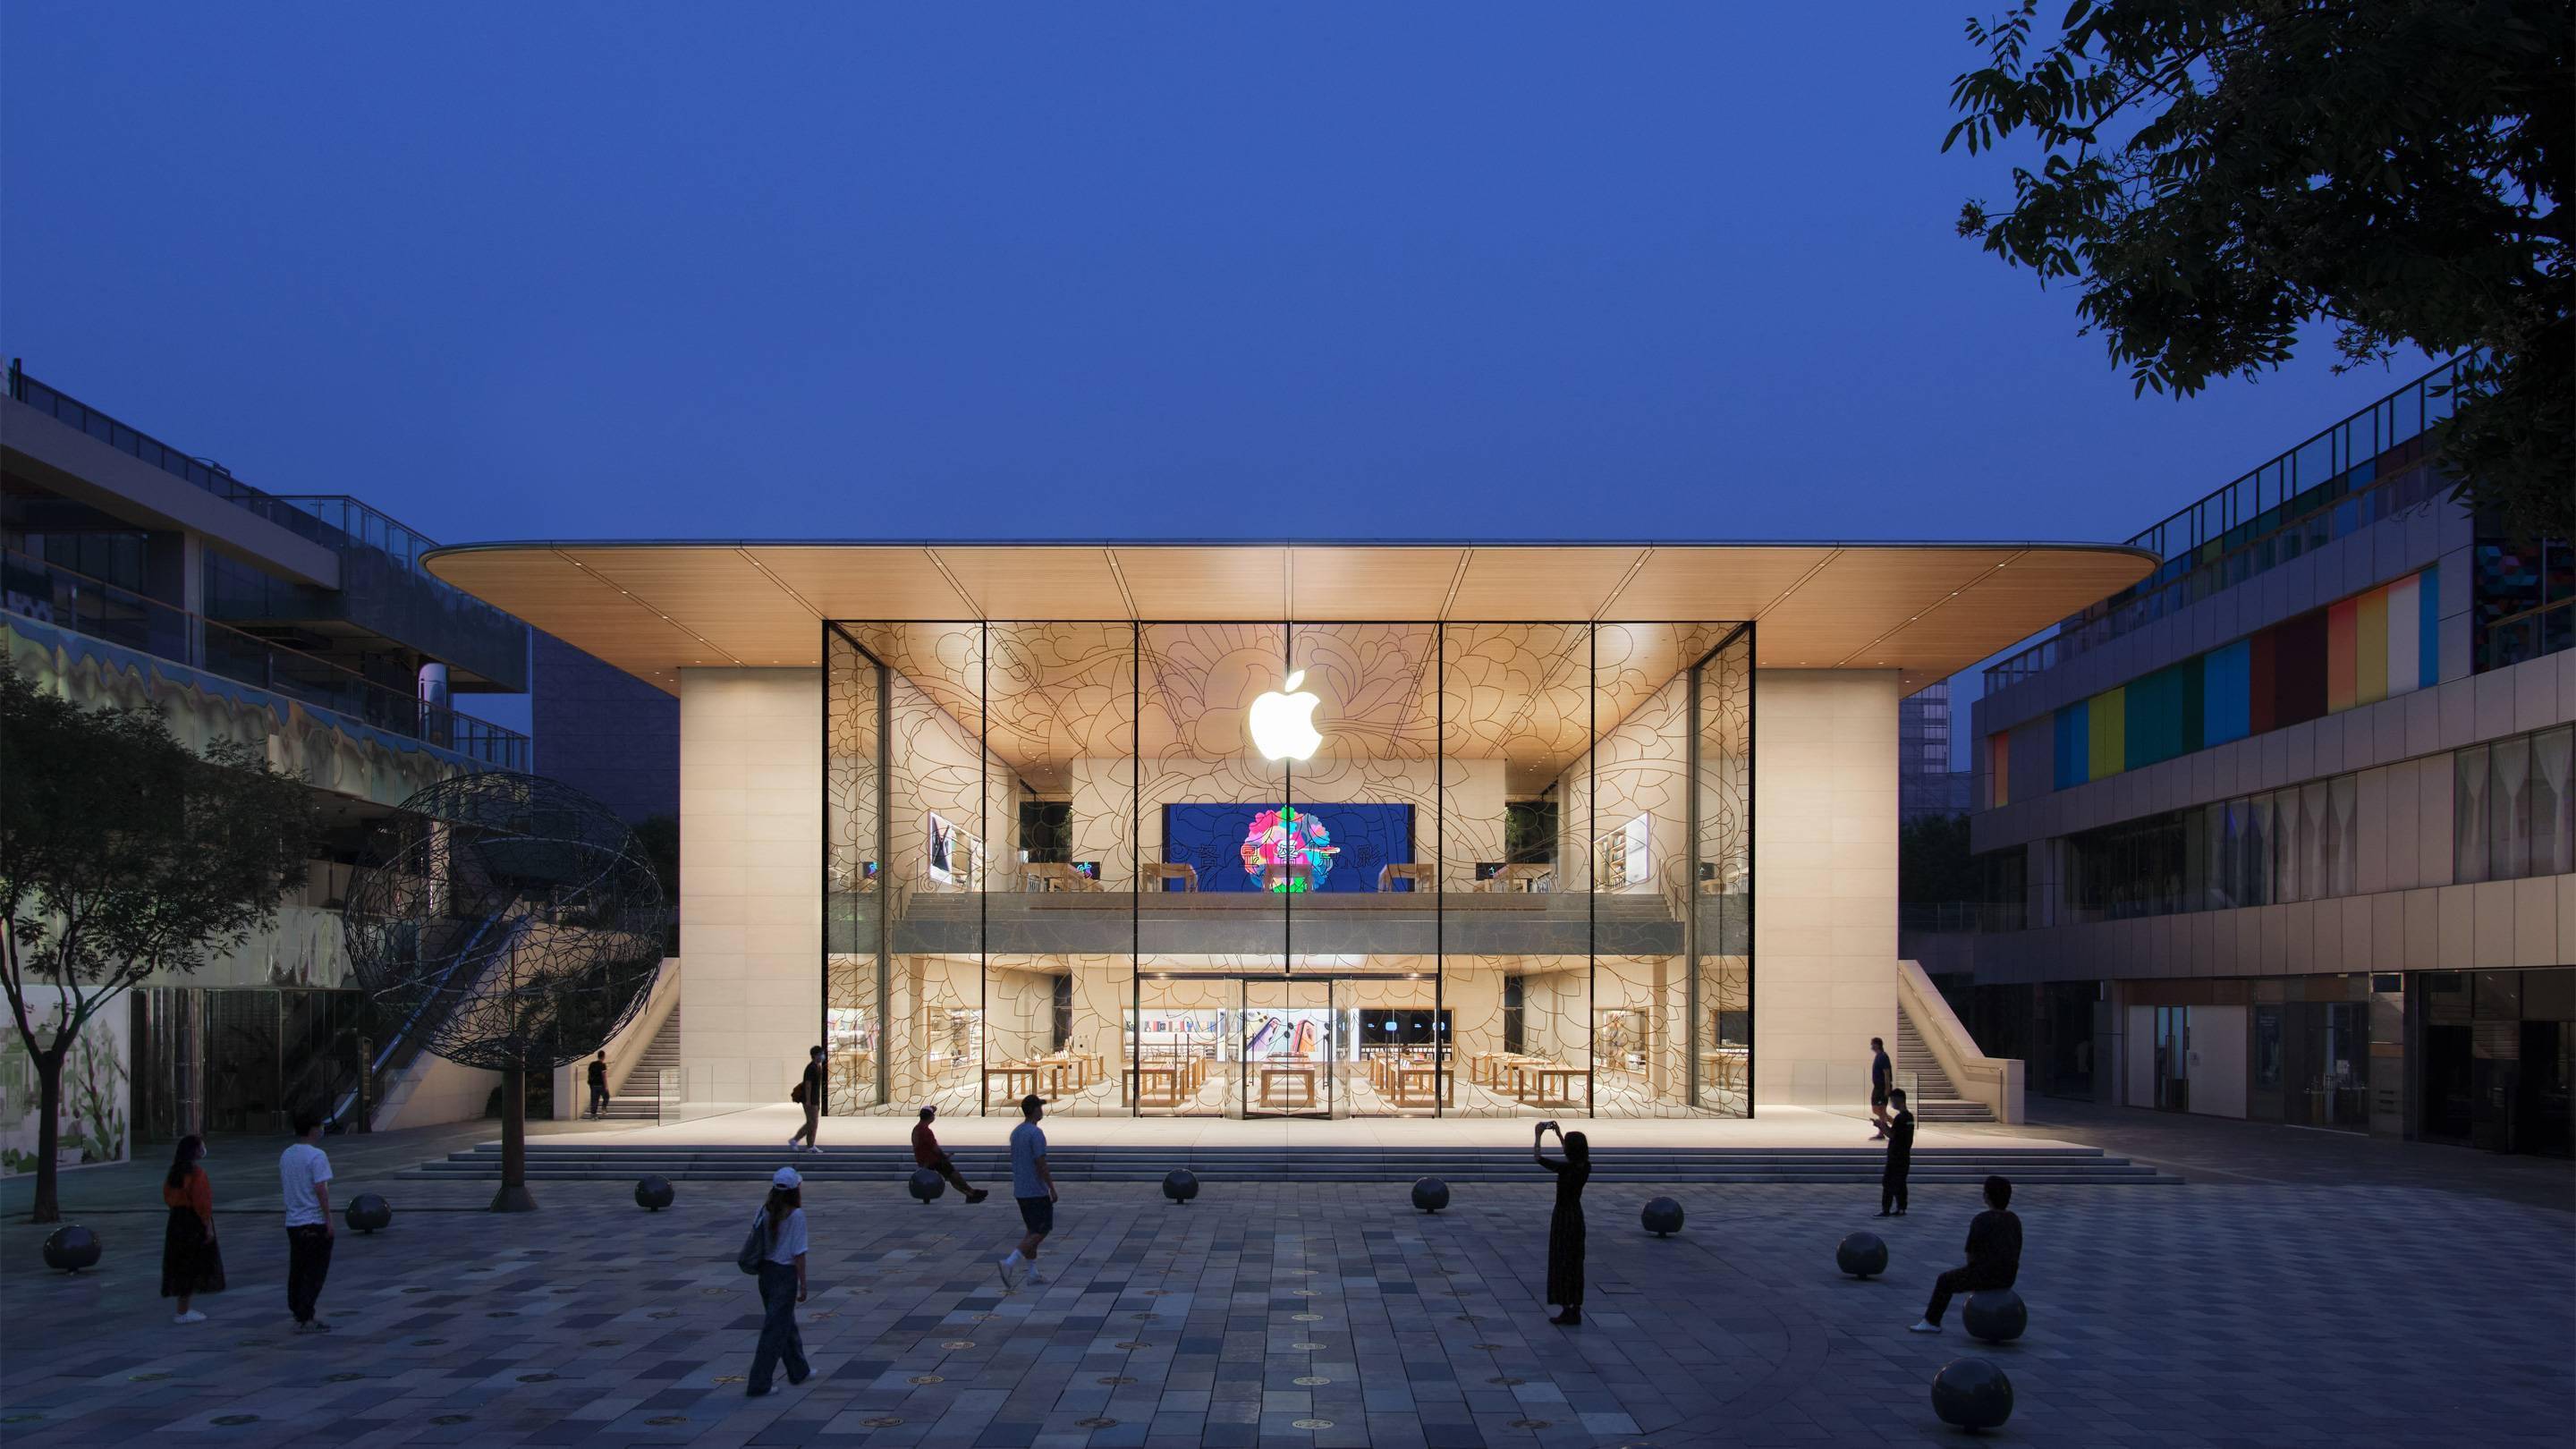 经营 20 年的 Apple Store 将来会有什么变化？